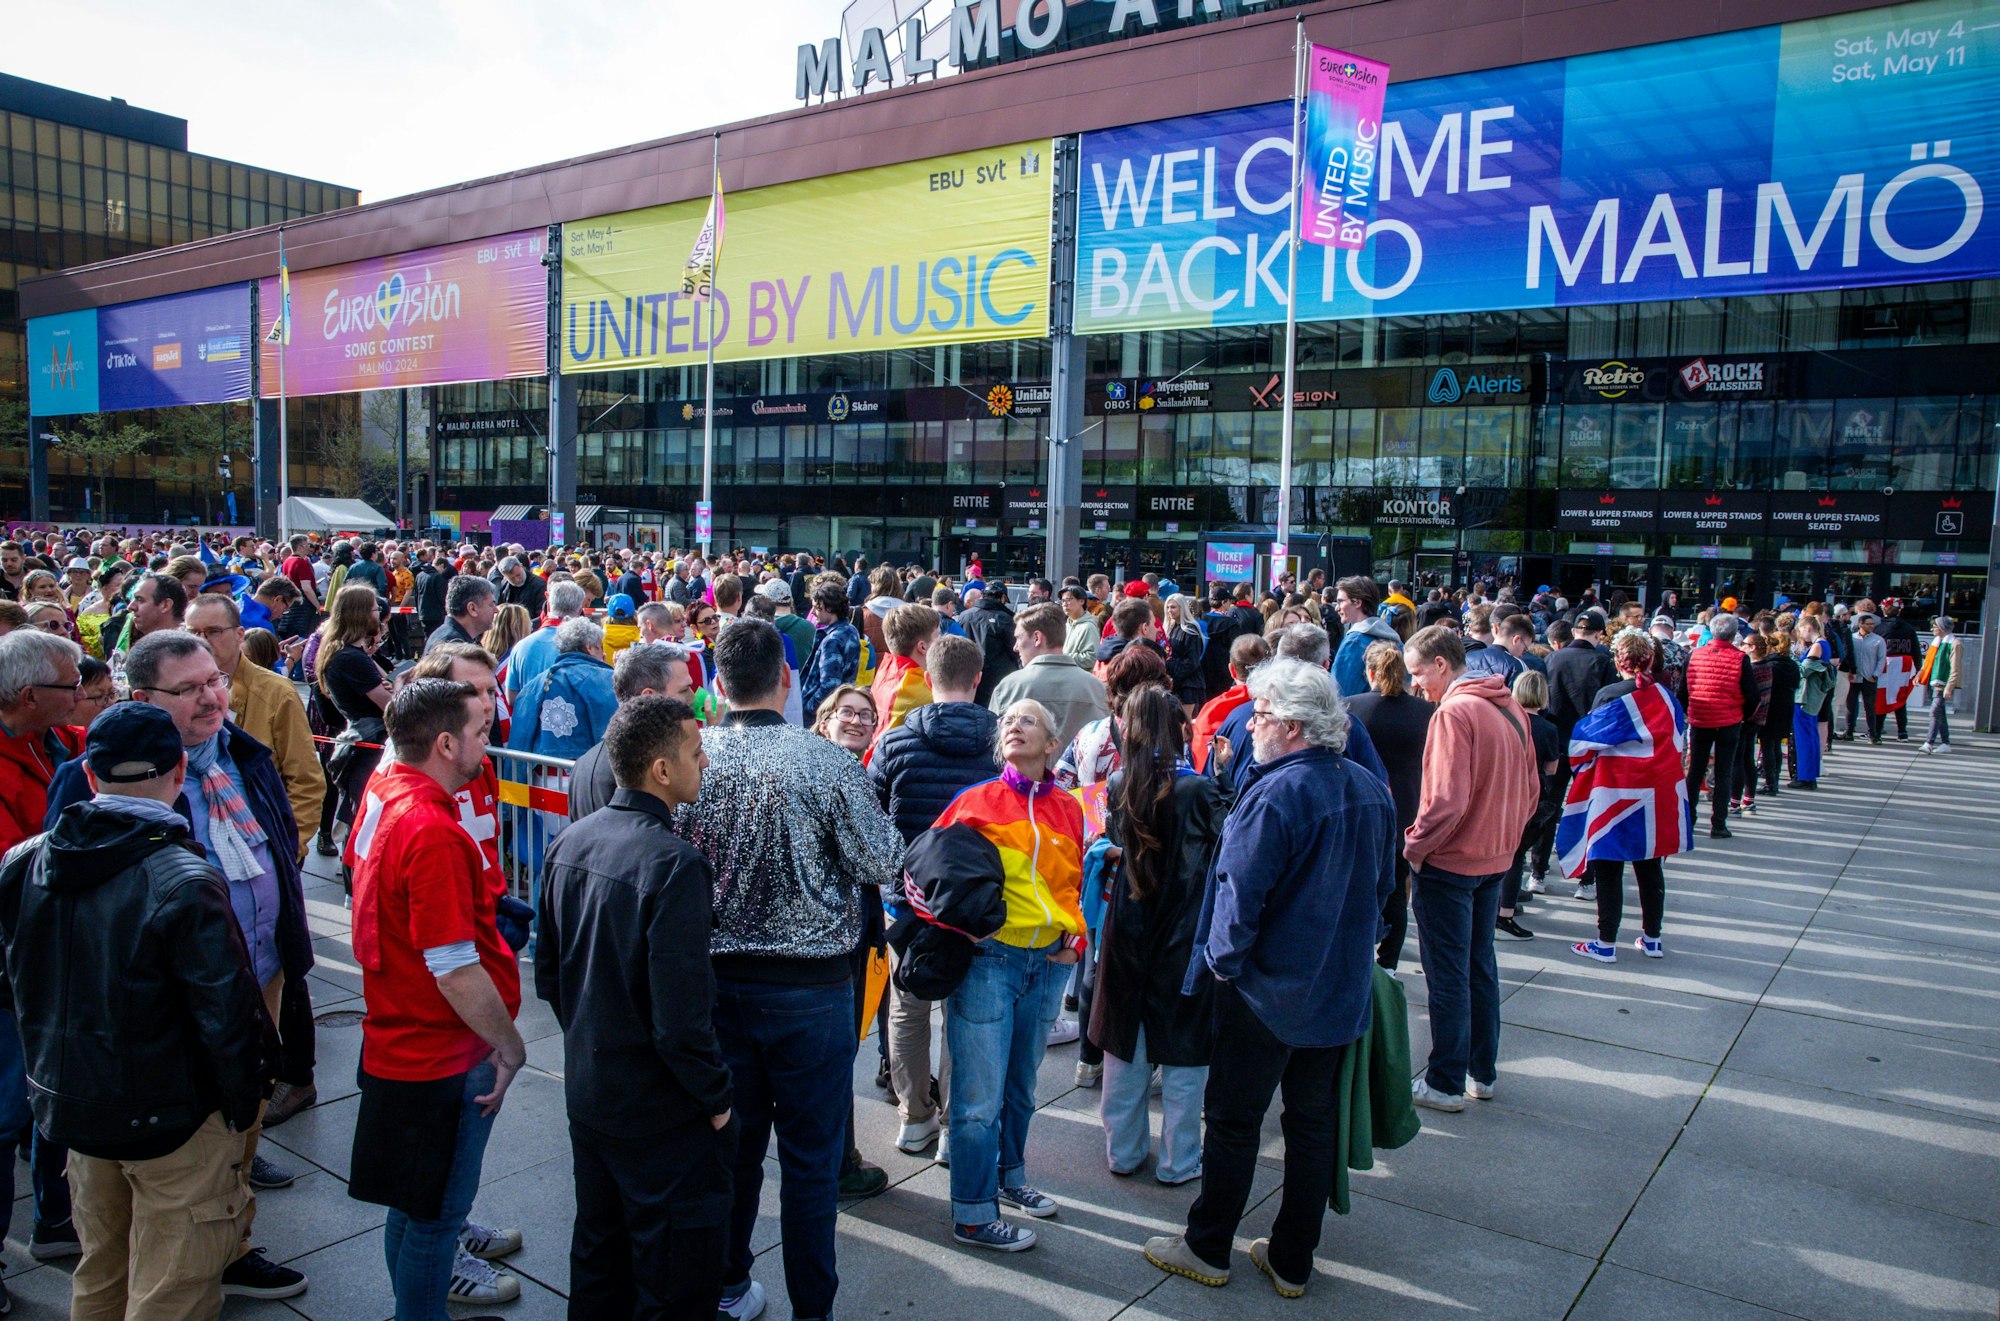 Europa mit Musik verbinden - das ist das Ziel des Eurovision Song Contest. Aber um Musik geht es immer weniger. In diesem Jahr findet der ESC in Malmö statt.